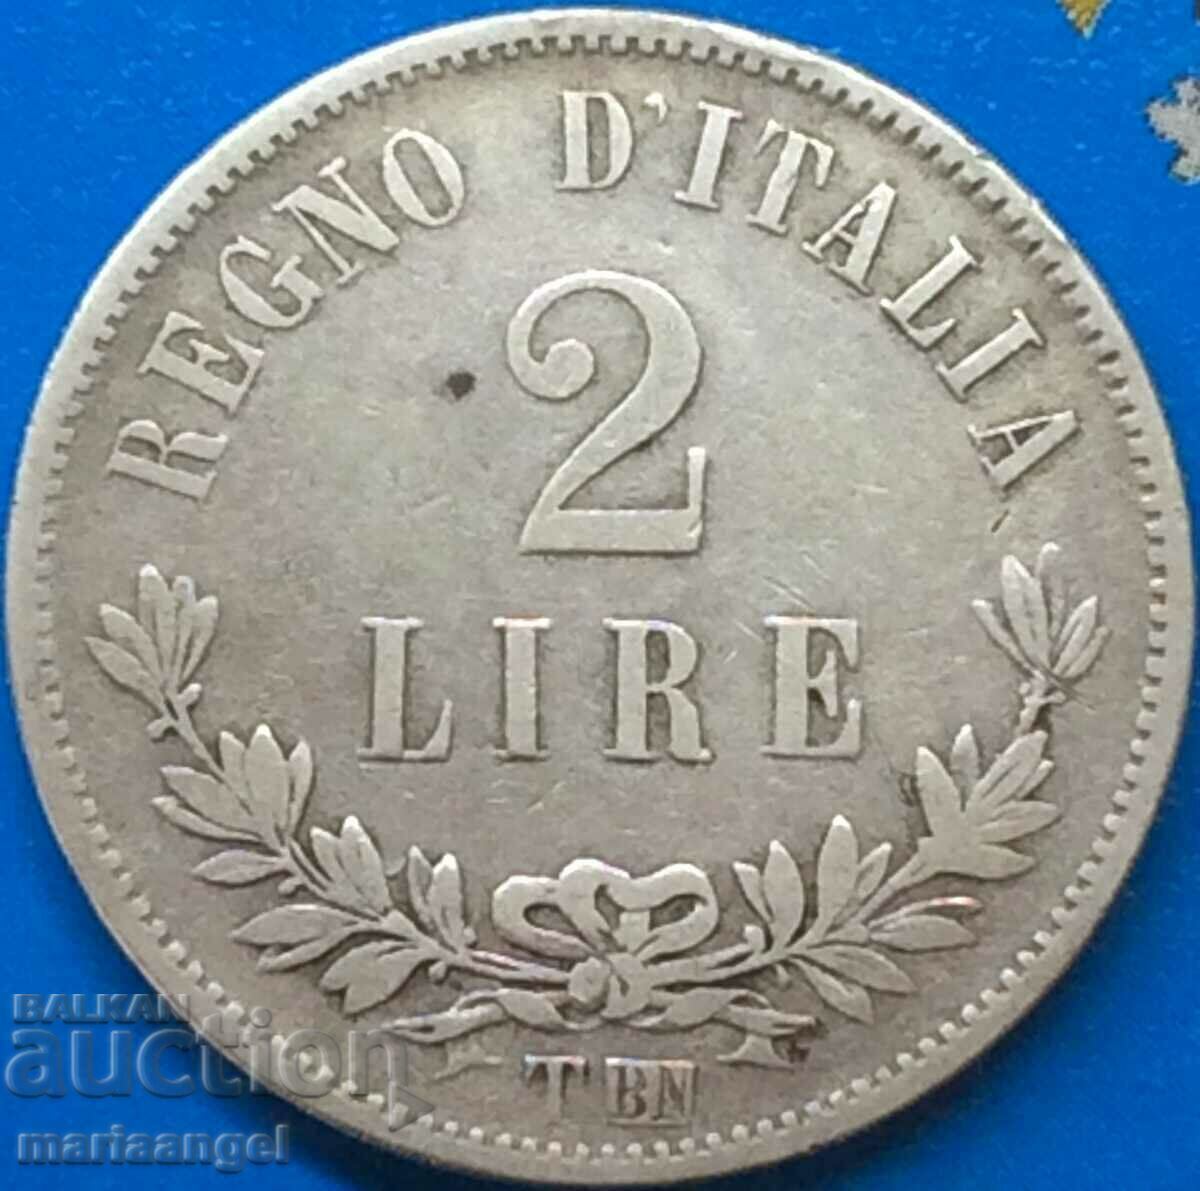 2 лири 1863 Т - Турин Италия "ЦИФРА" DIGIT BN-Бирминхам Ag